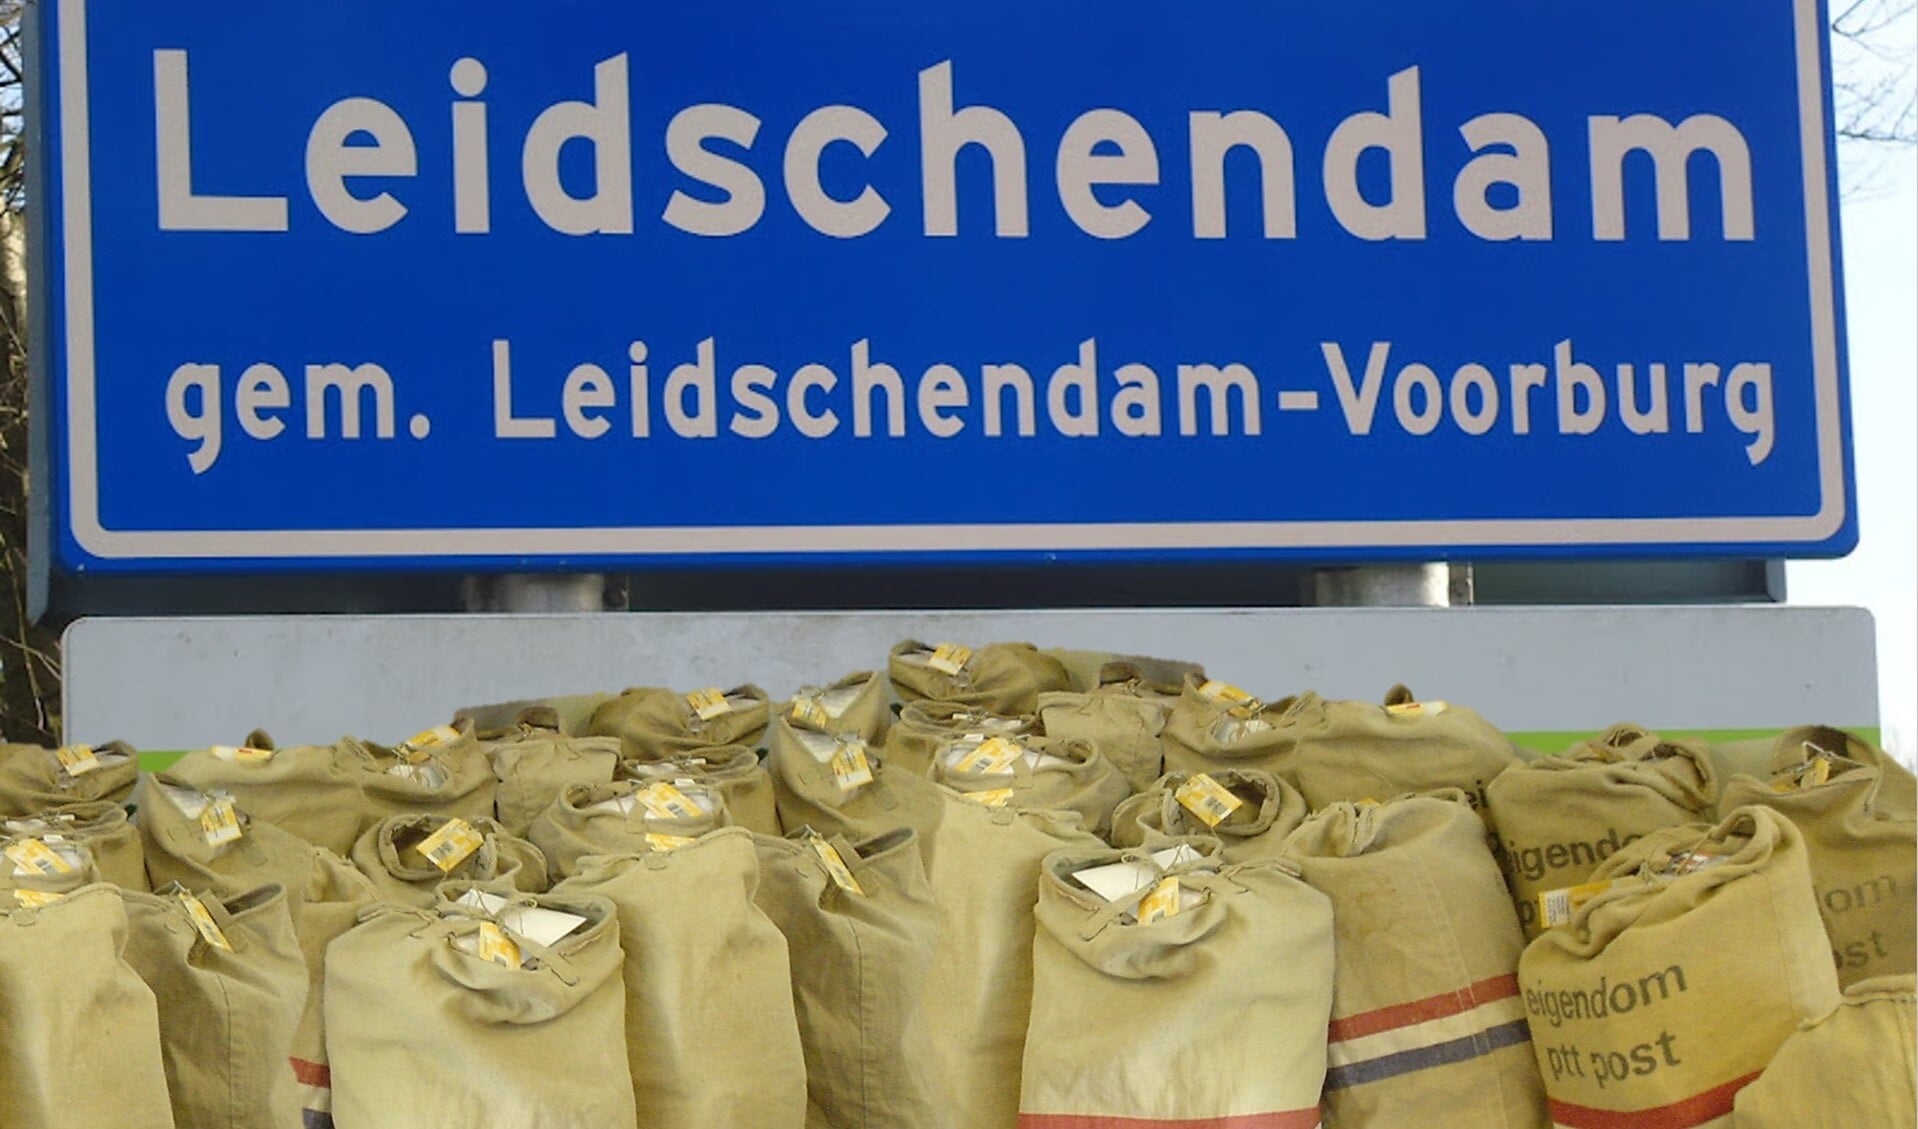 Als het aan DamBelang ligt ontvangt het gemeentebestuur postzakken vol ansichtkaarten. (Foto: DamBelang)